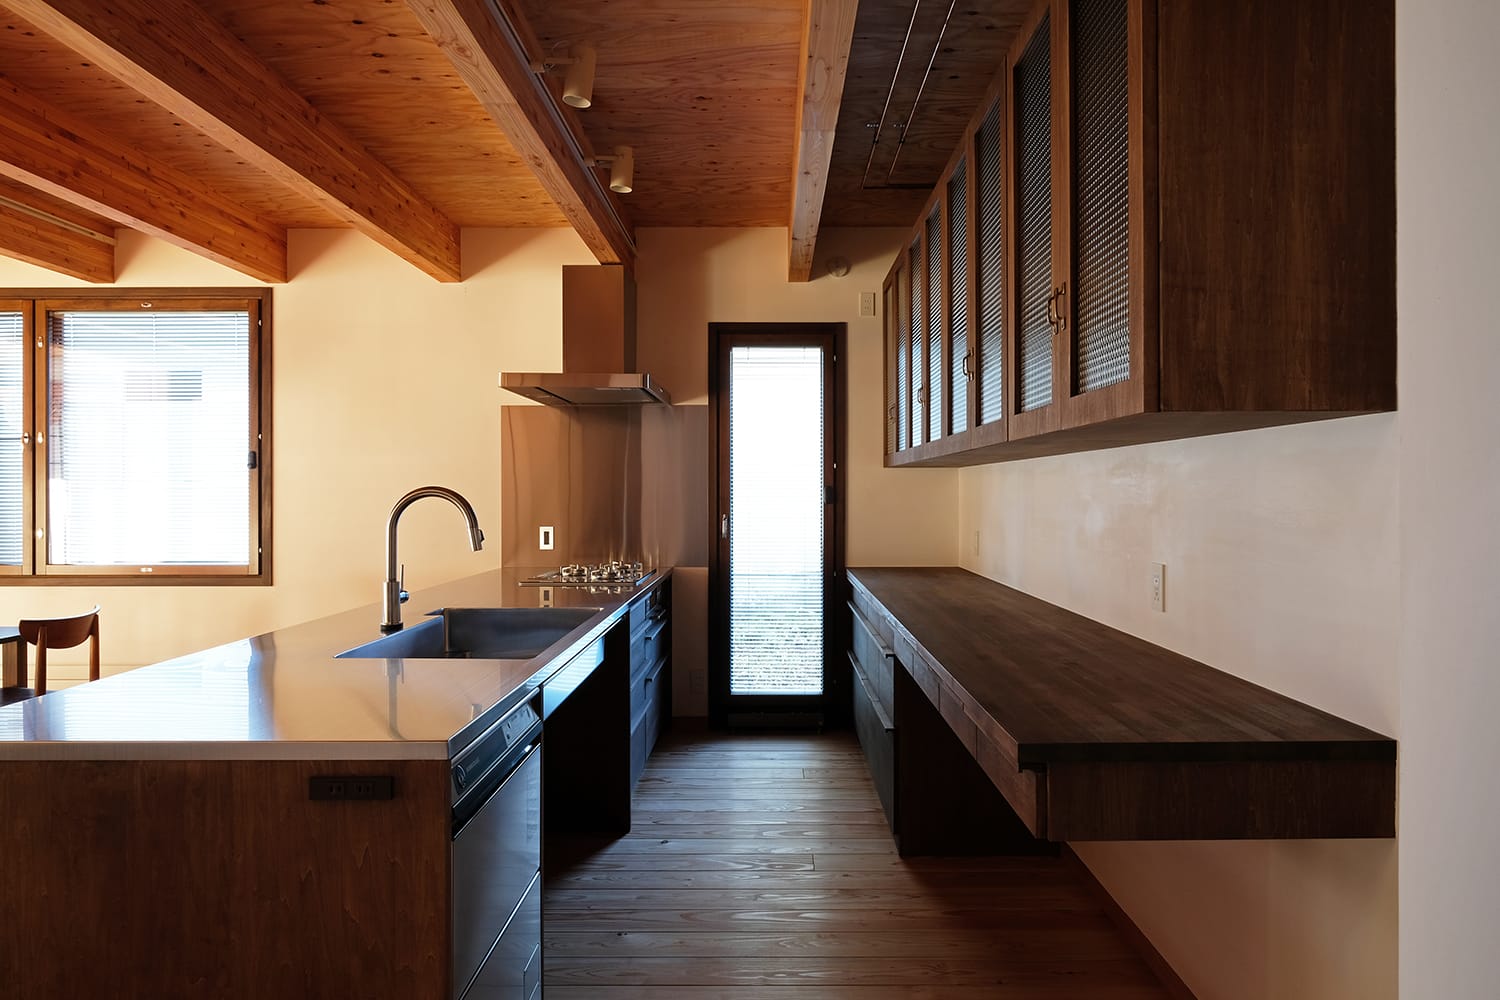 キッチン周りの造作家具を横から 食器棚ガラス扉と木製カウンターと引き出しとステンレスカウンターと扉と引戸